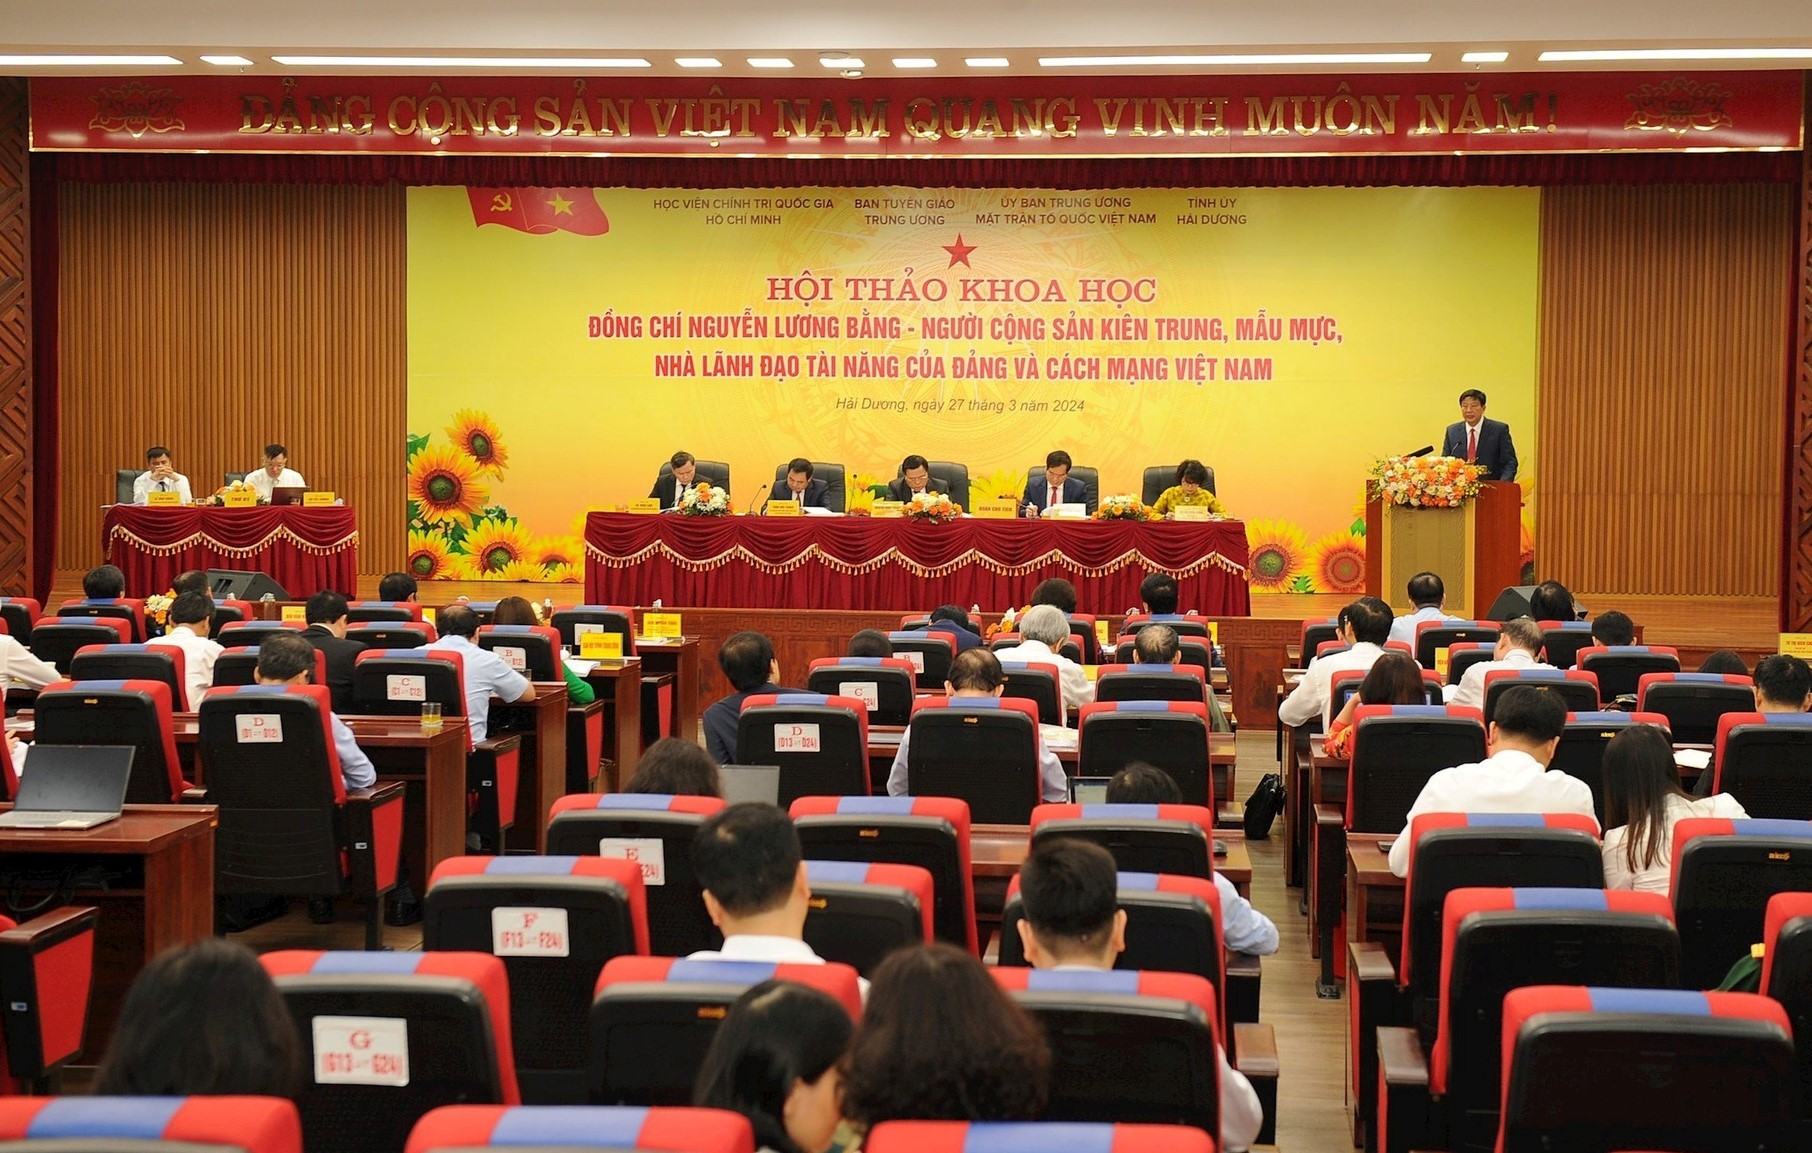 hội thảo khoa học với chủ đề: “Đồng chí Nguyễn Lương Bằng - Người cộng sản kiên trung, mẫu mực, nhà lãnh đạo tài năng của Đảng và cách mạng Việt Nam”